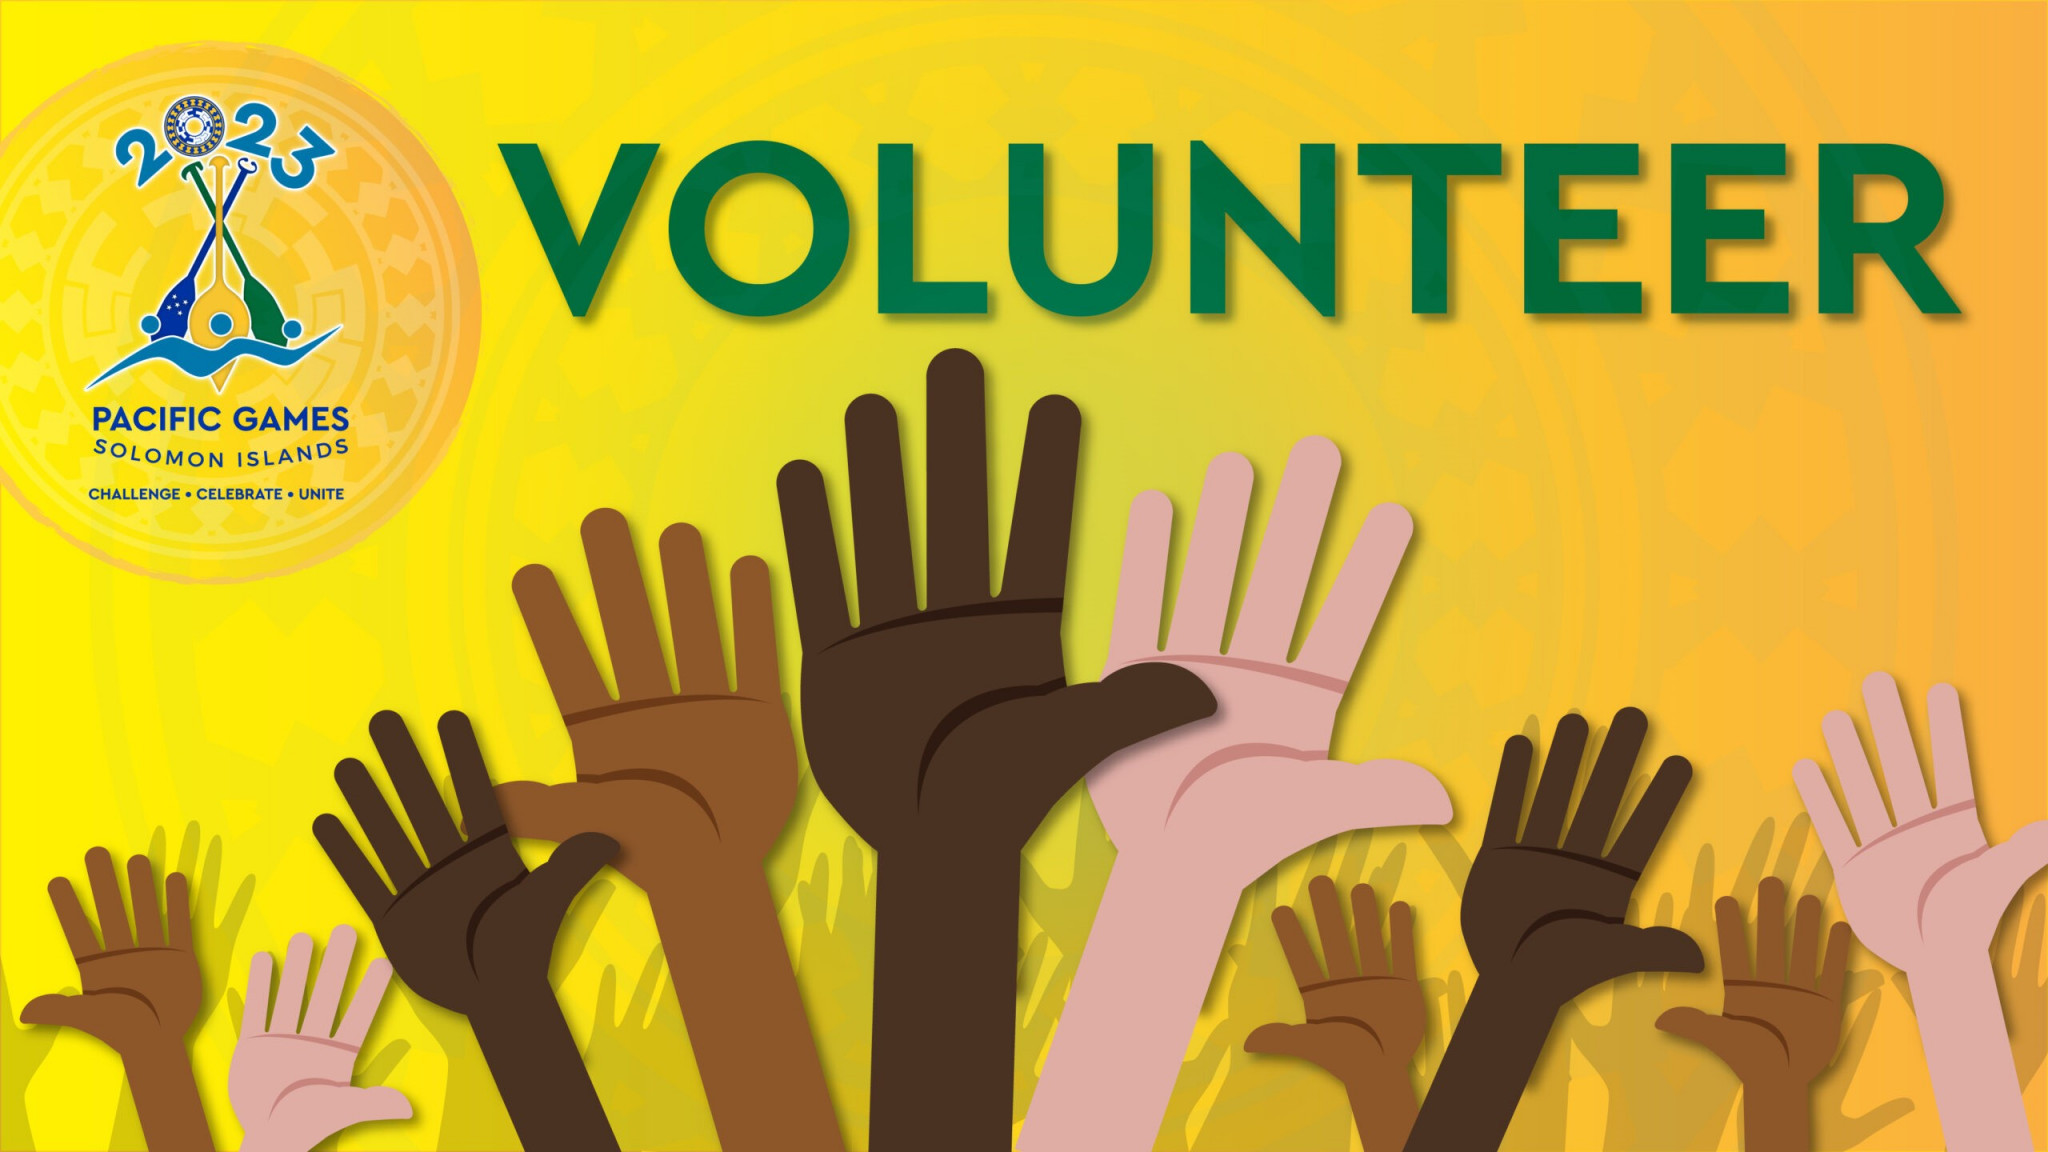 Solomon Islands 2023 is calling for volunteers from April 1 ©Solomon Islands 2023 